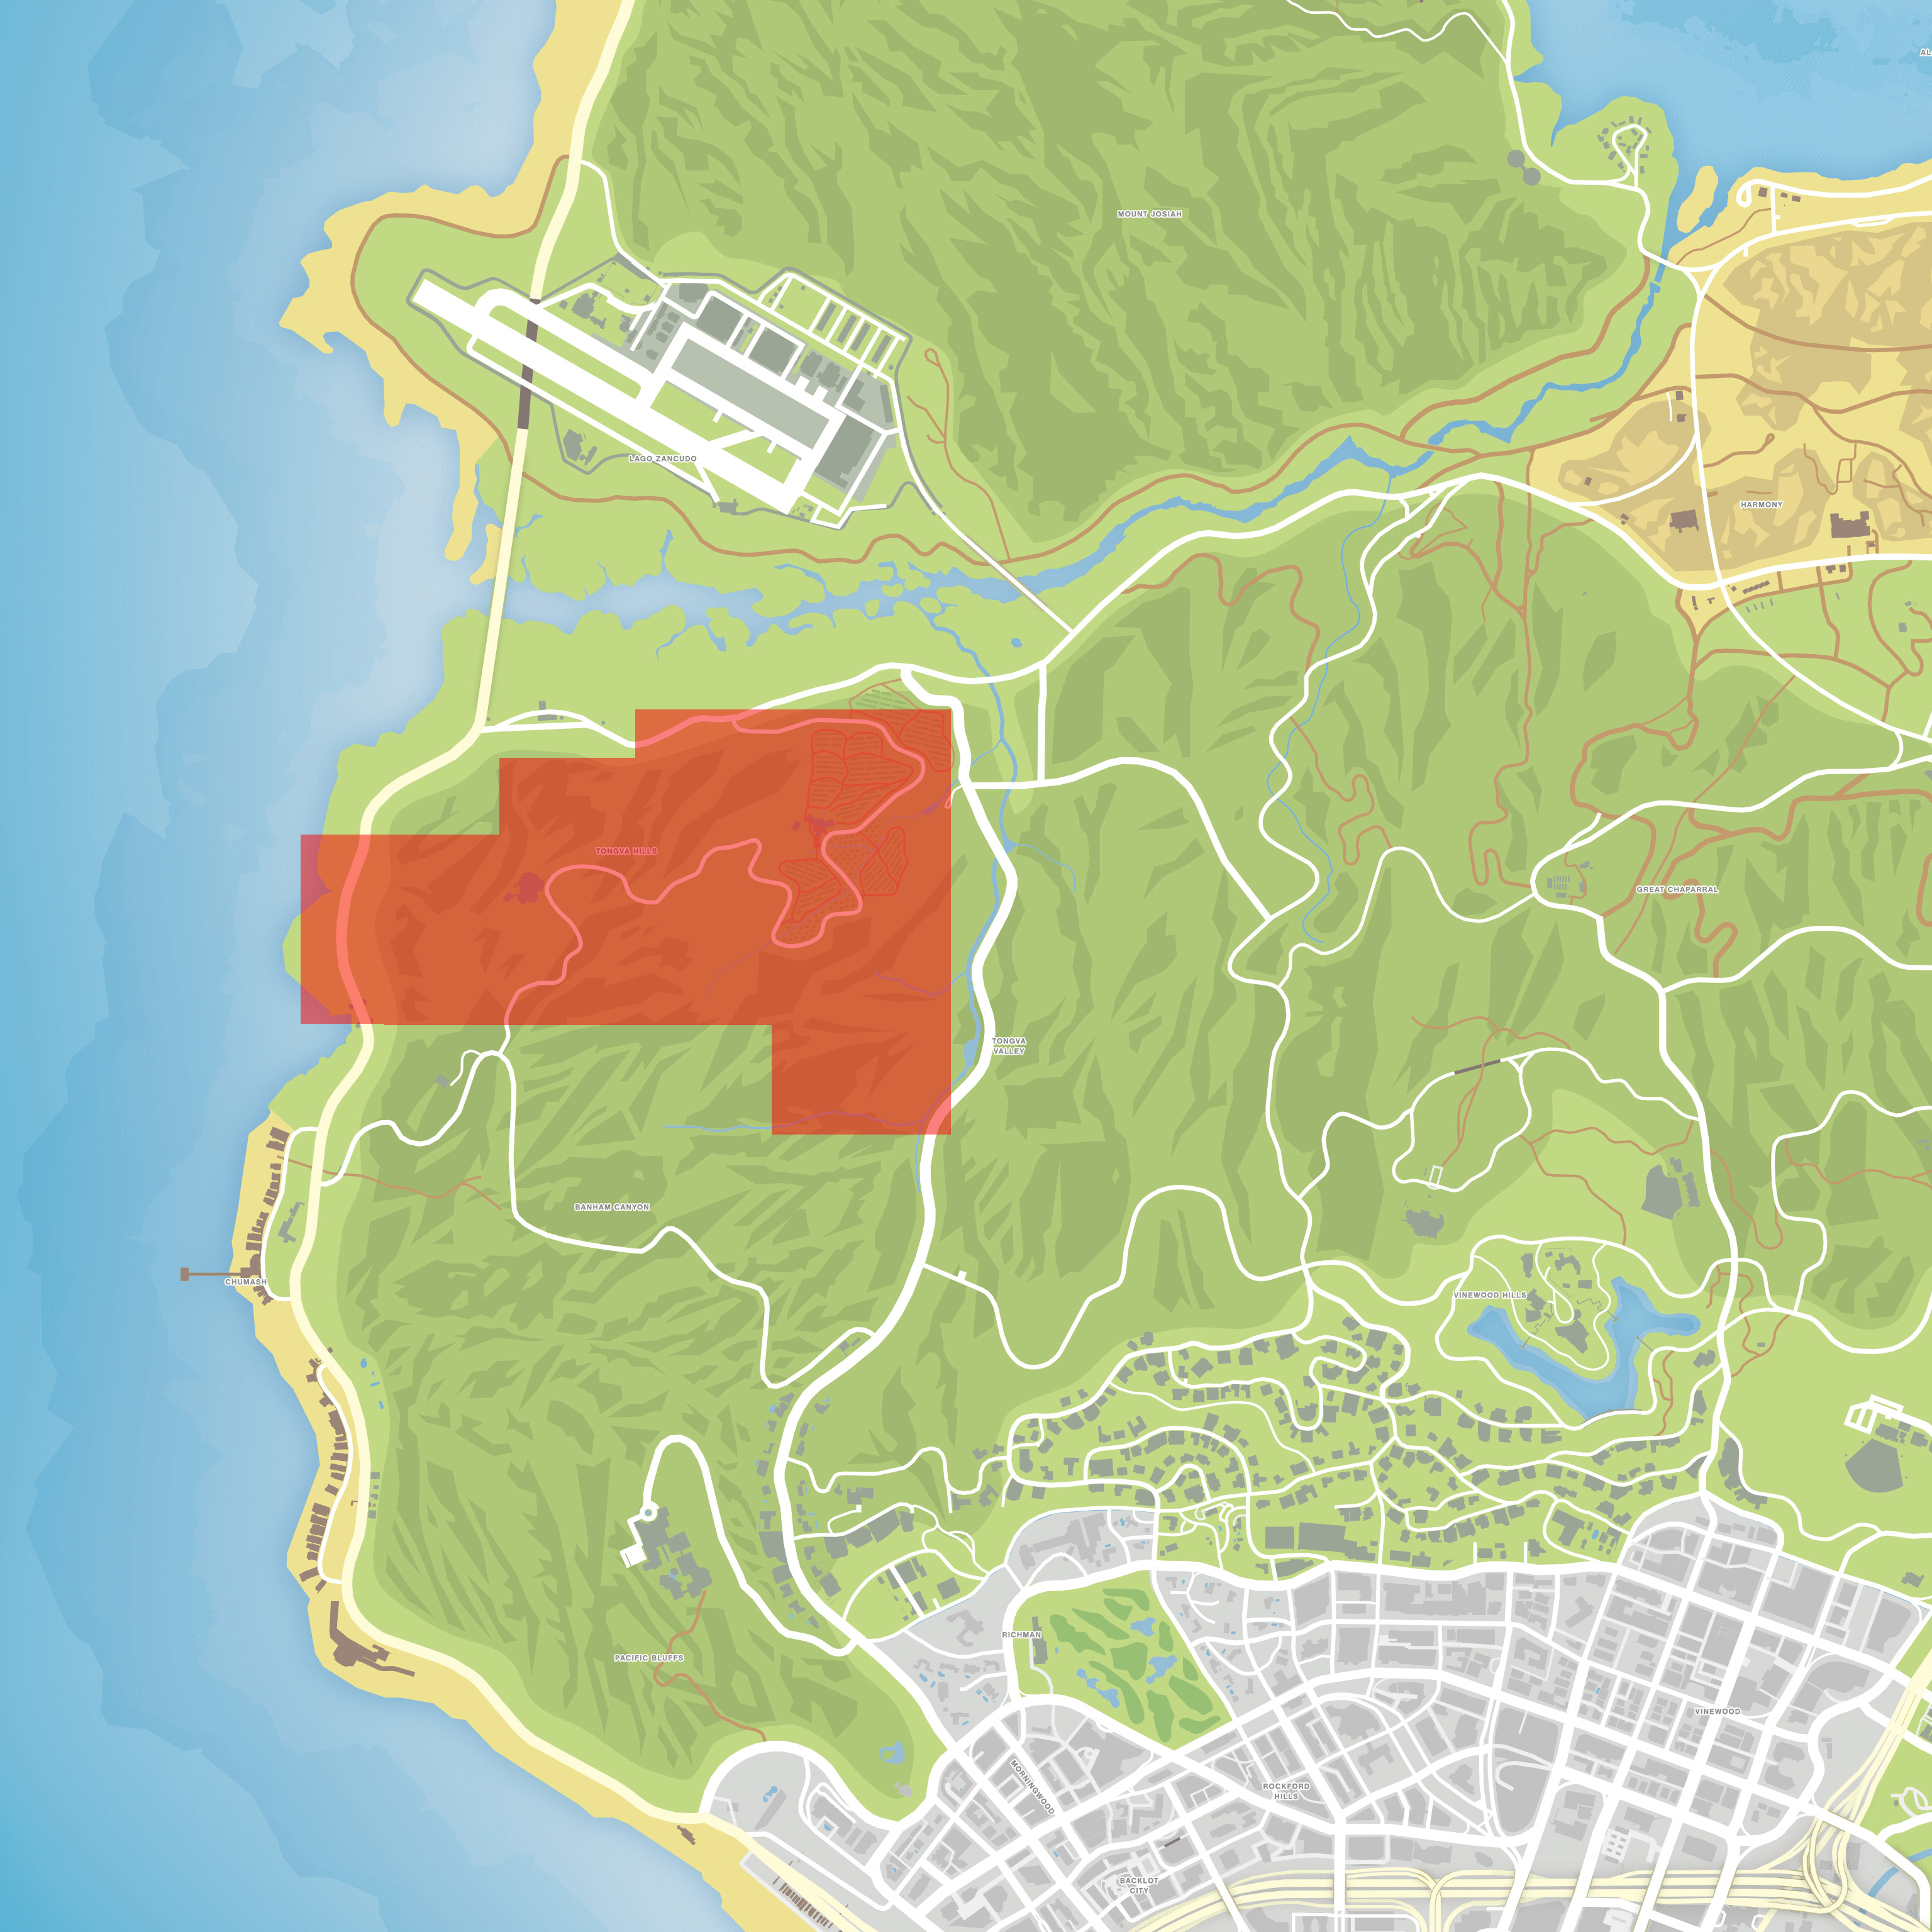 Grand Theft Auto V 5 Los Santos and Blaine County Landkarte Map